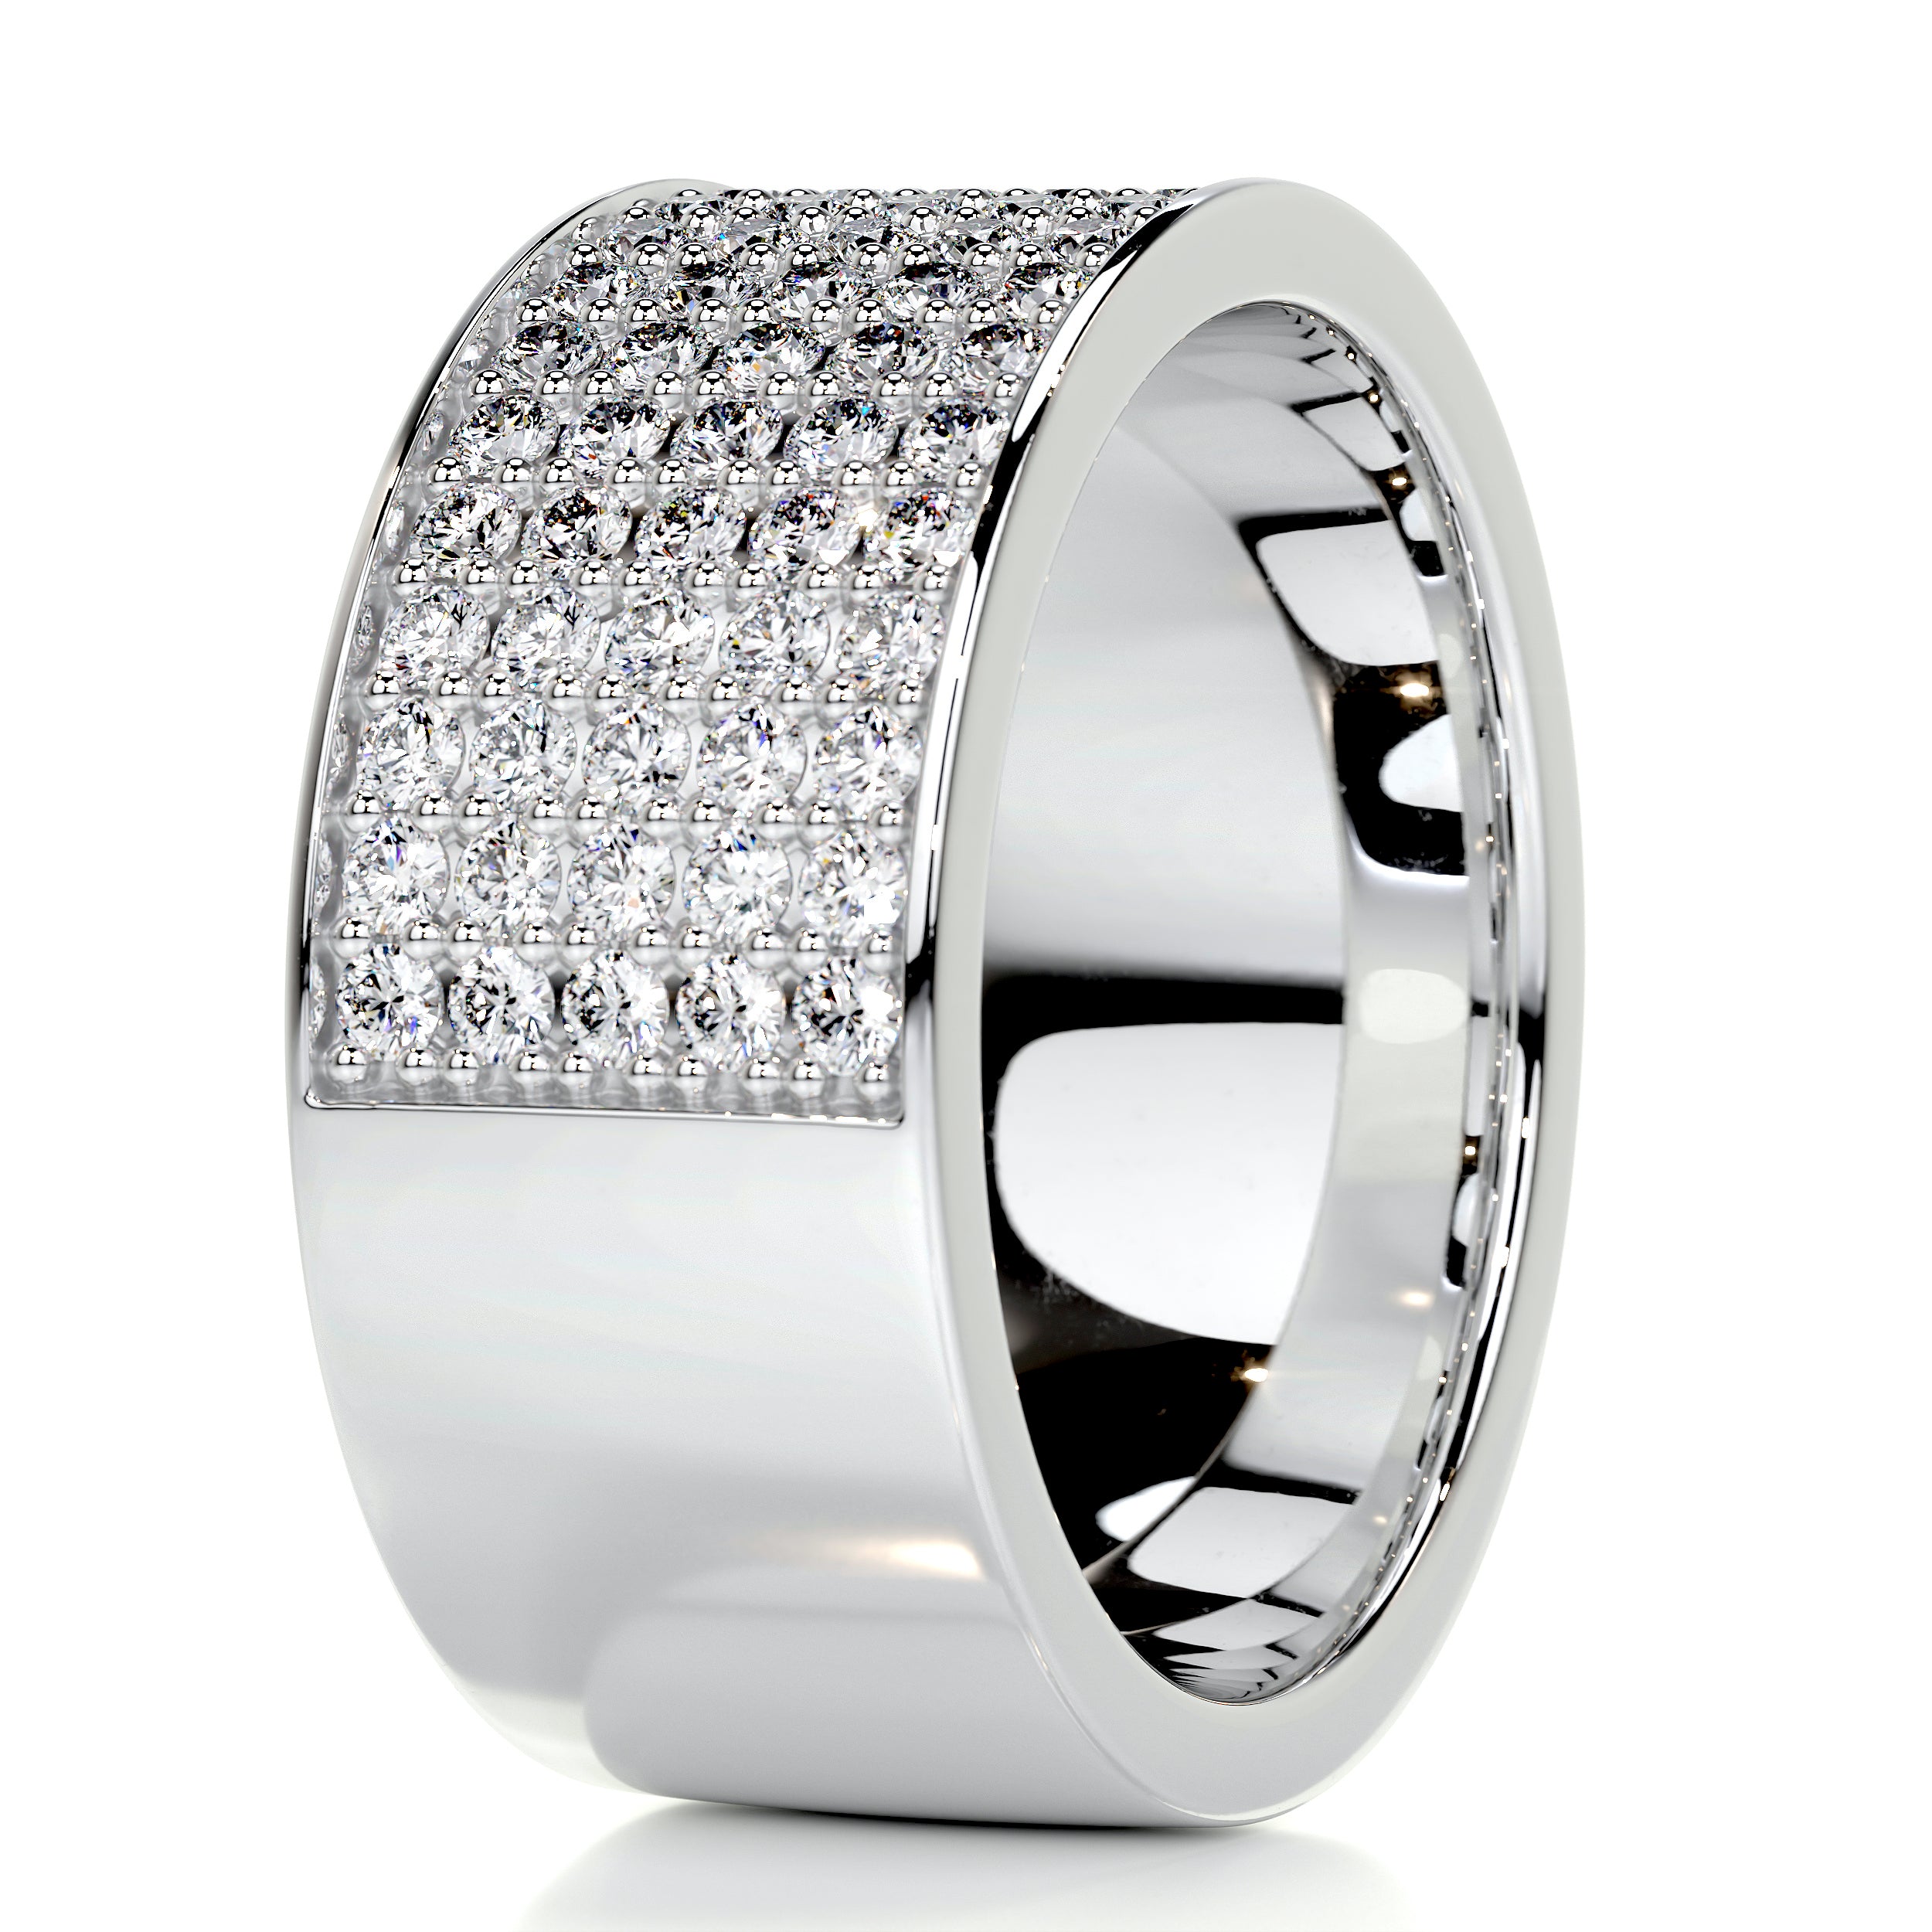 June Diamond Wedding Ring   (1 Carat) -18K White Gold